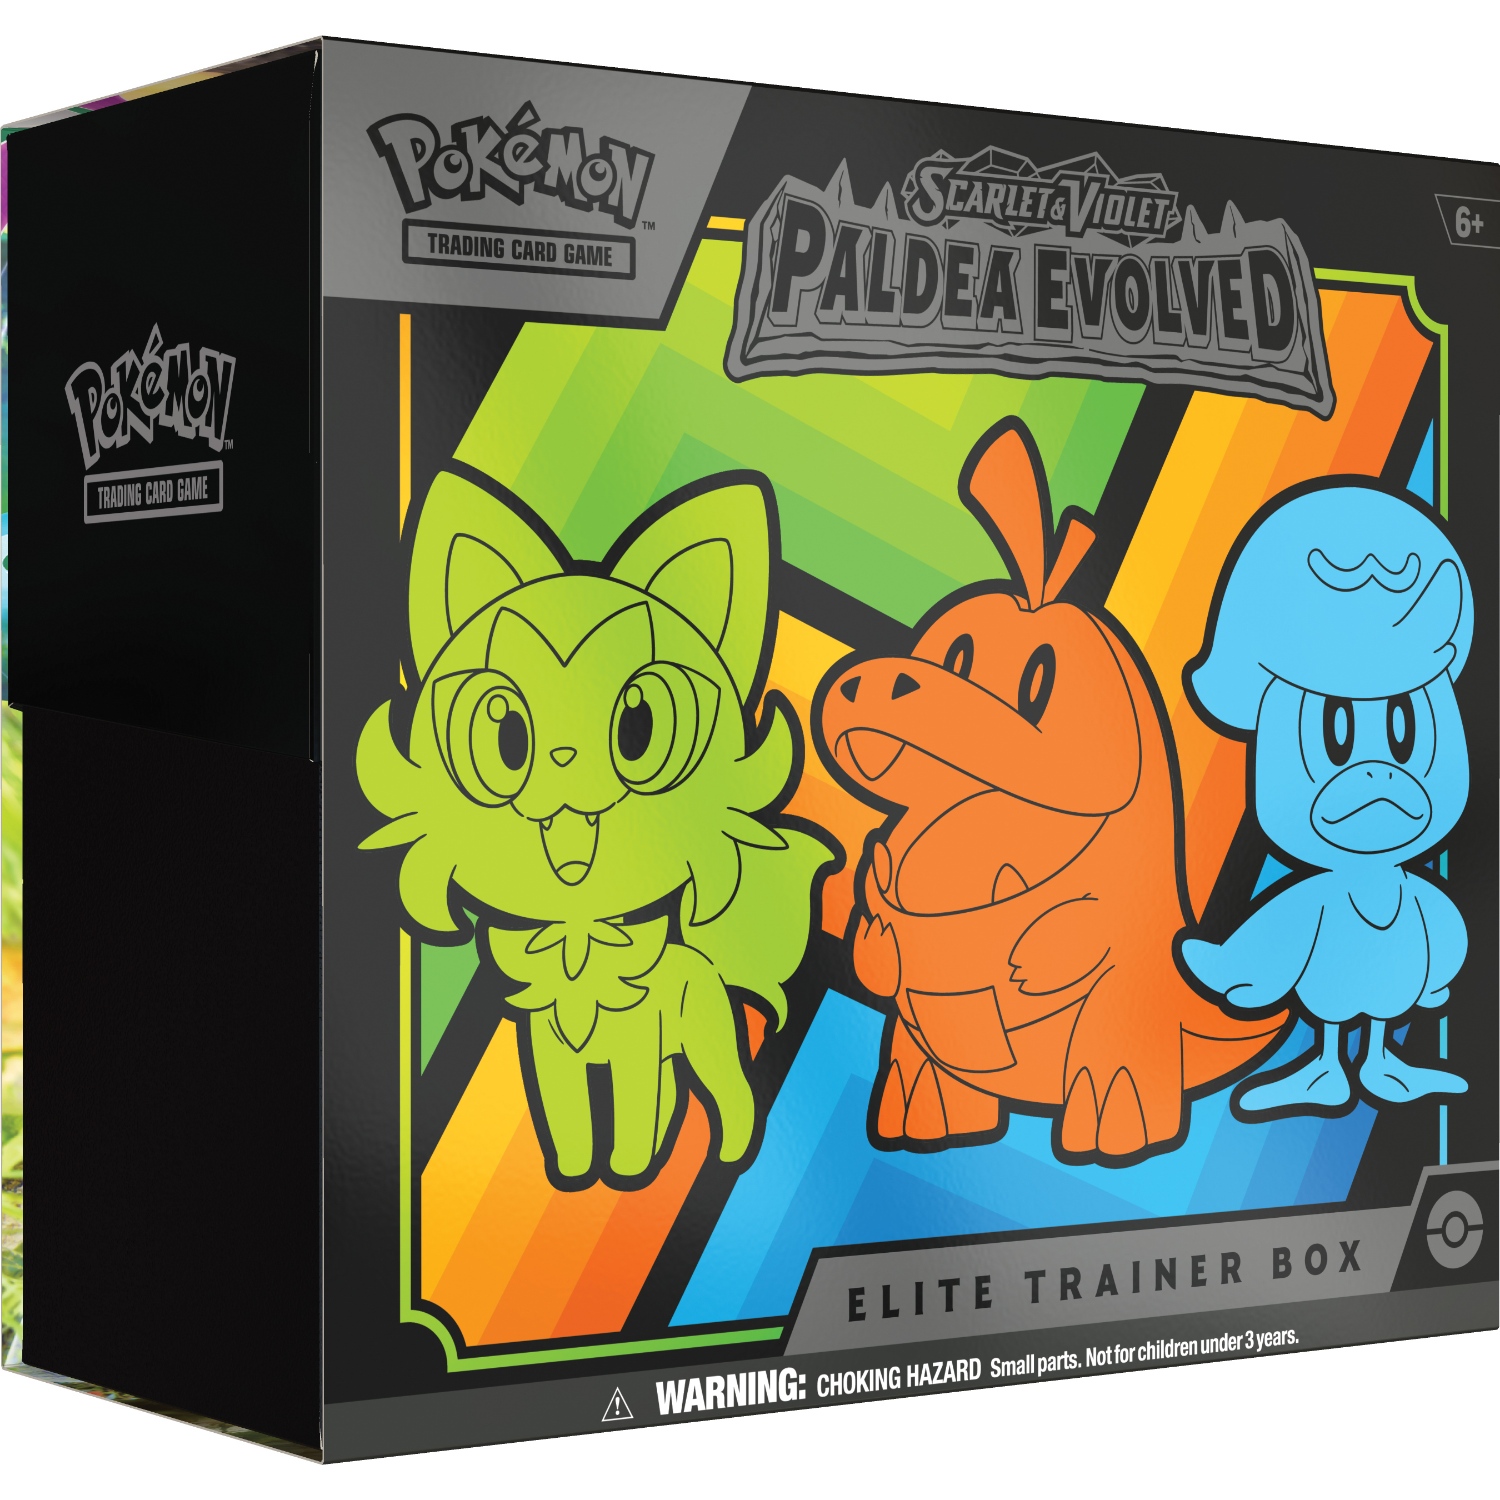 Pokemon S&v Paldea Evolved Trainer Box